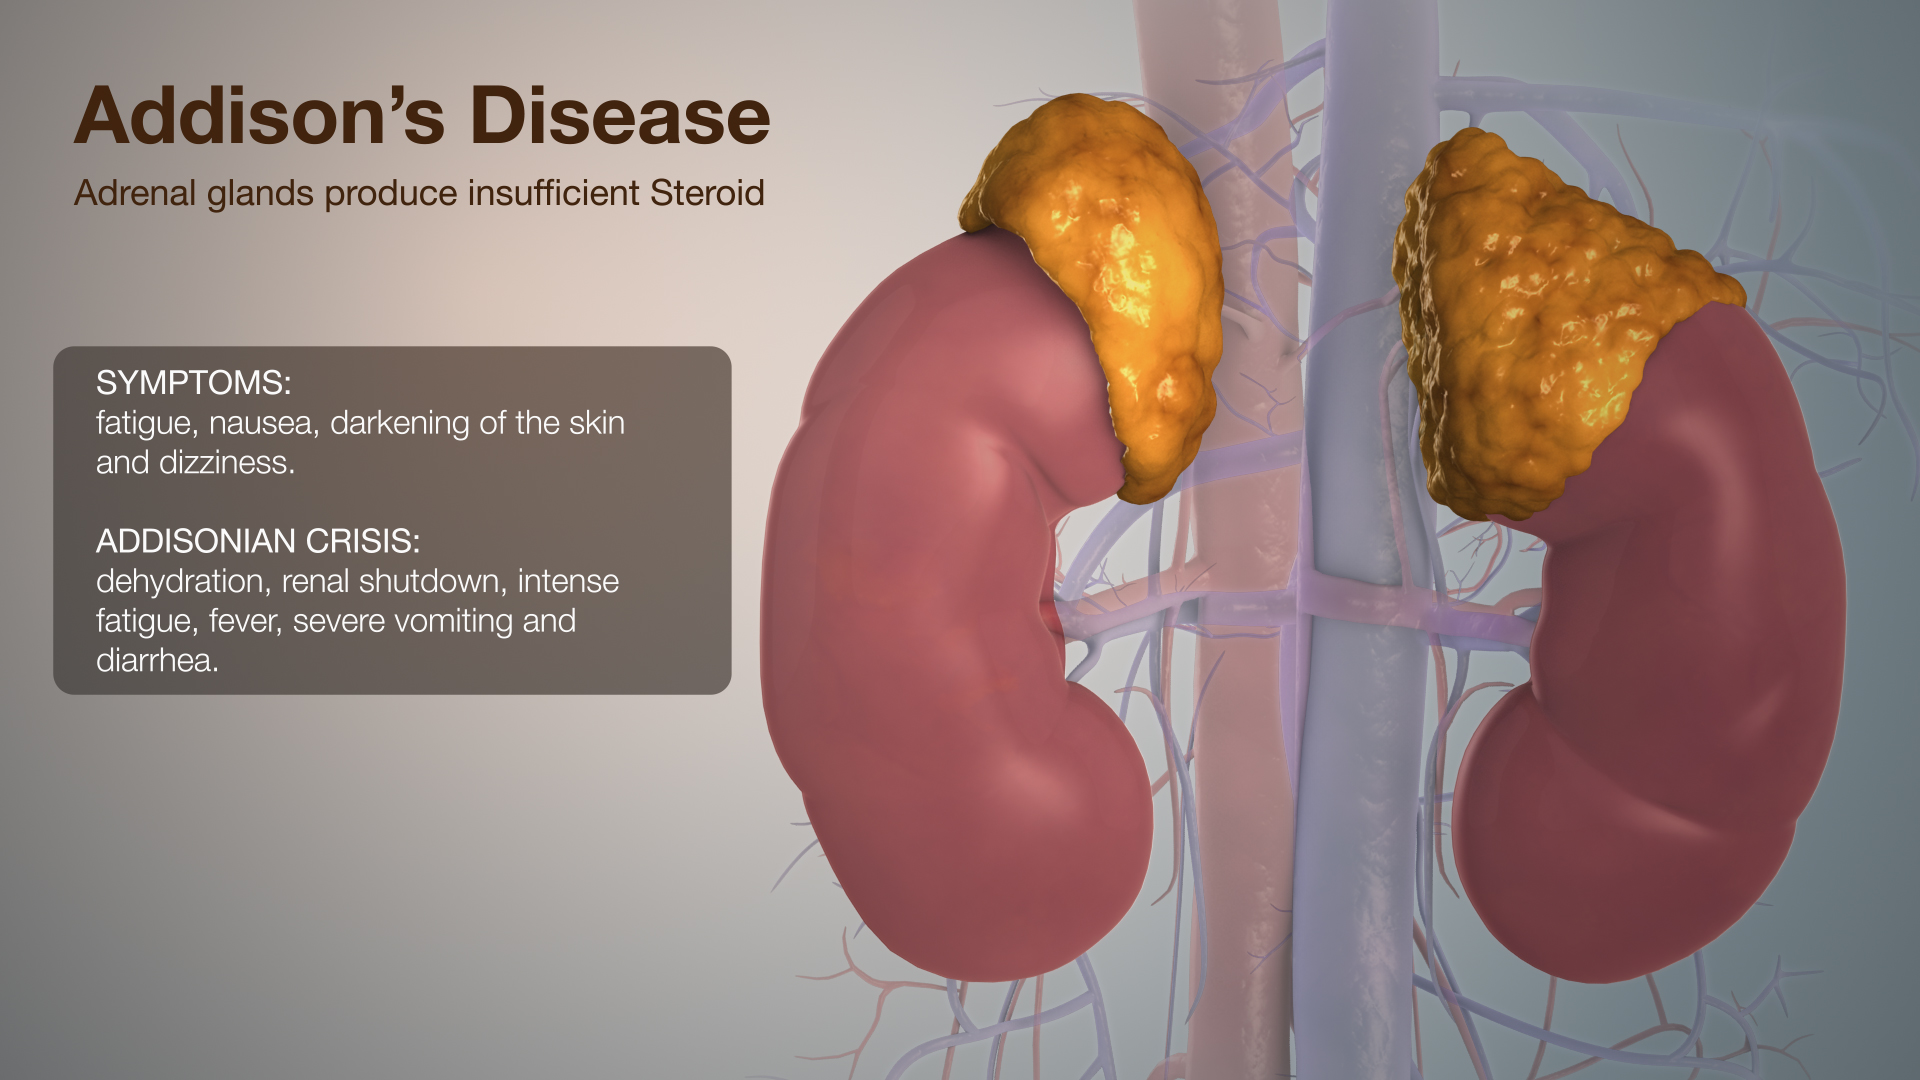 Medical Animation Explaining Addison's Disease